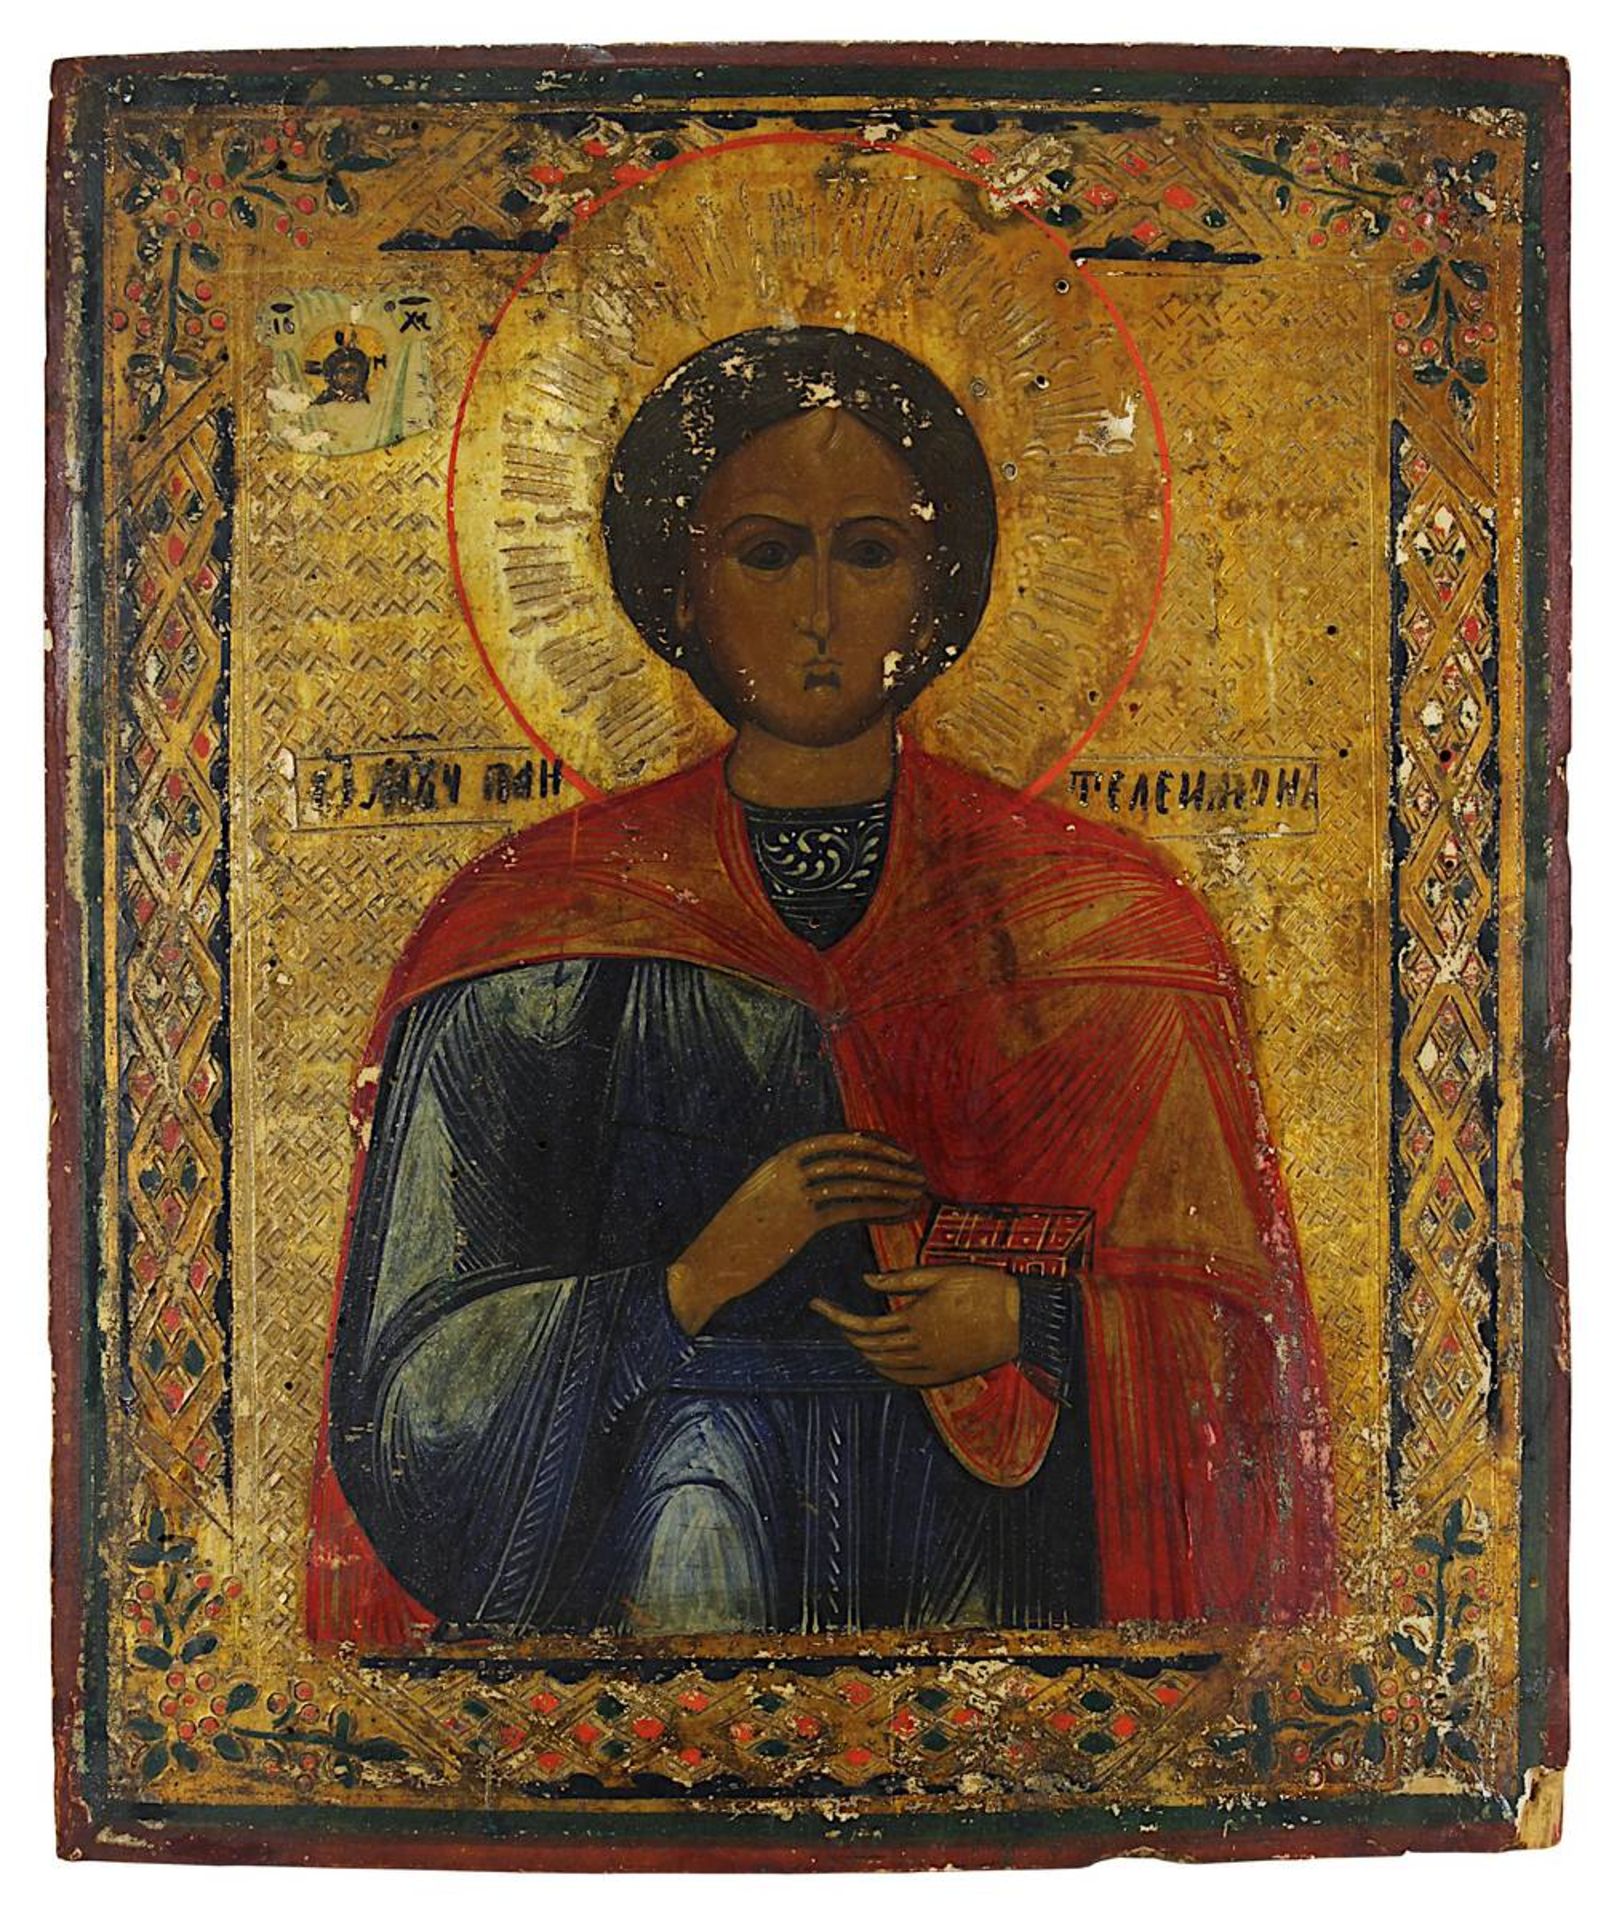 Ikone, Heiliger Pantheleimon, Russland 2. H. 19. Jh., Tempera auf Holz, Darstellung des Arztheiligen